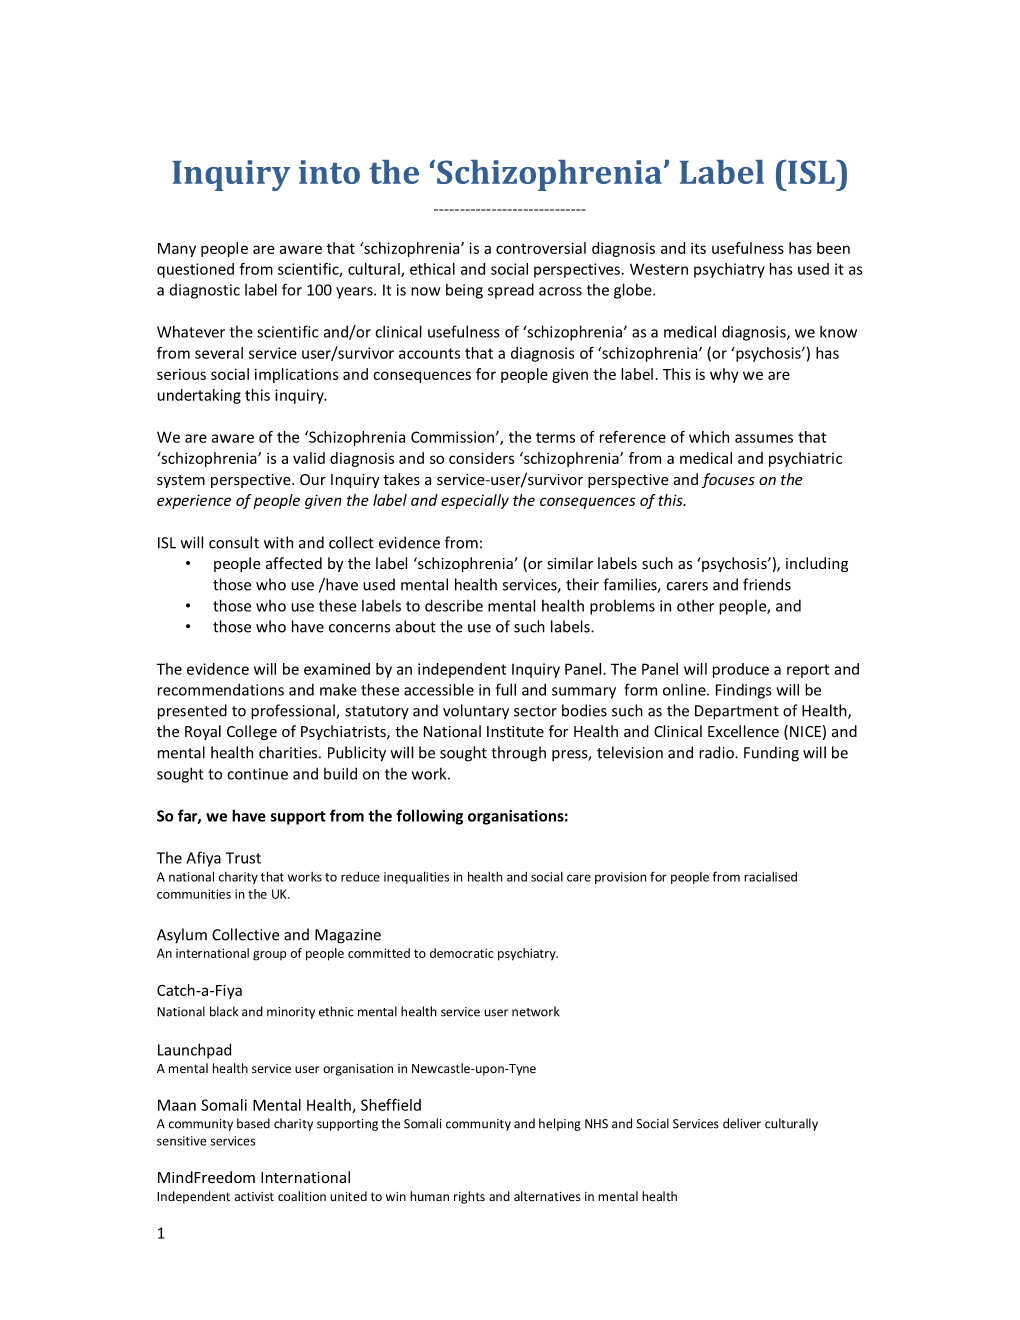 Inquiry Into the 'Schizophrenia' Label (ISL)